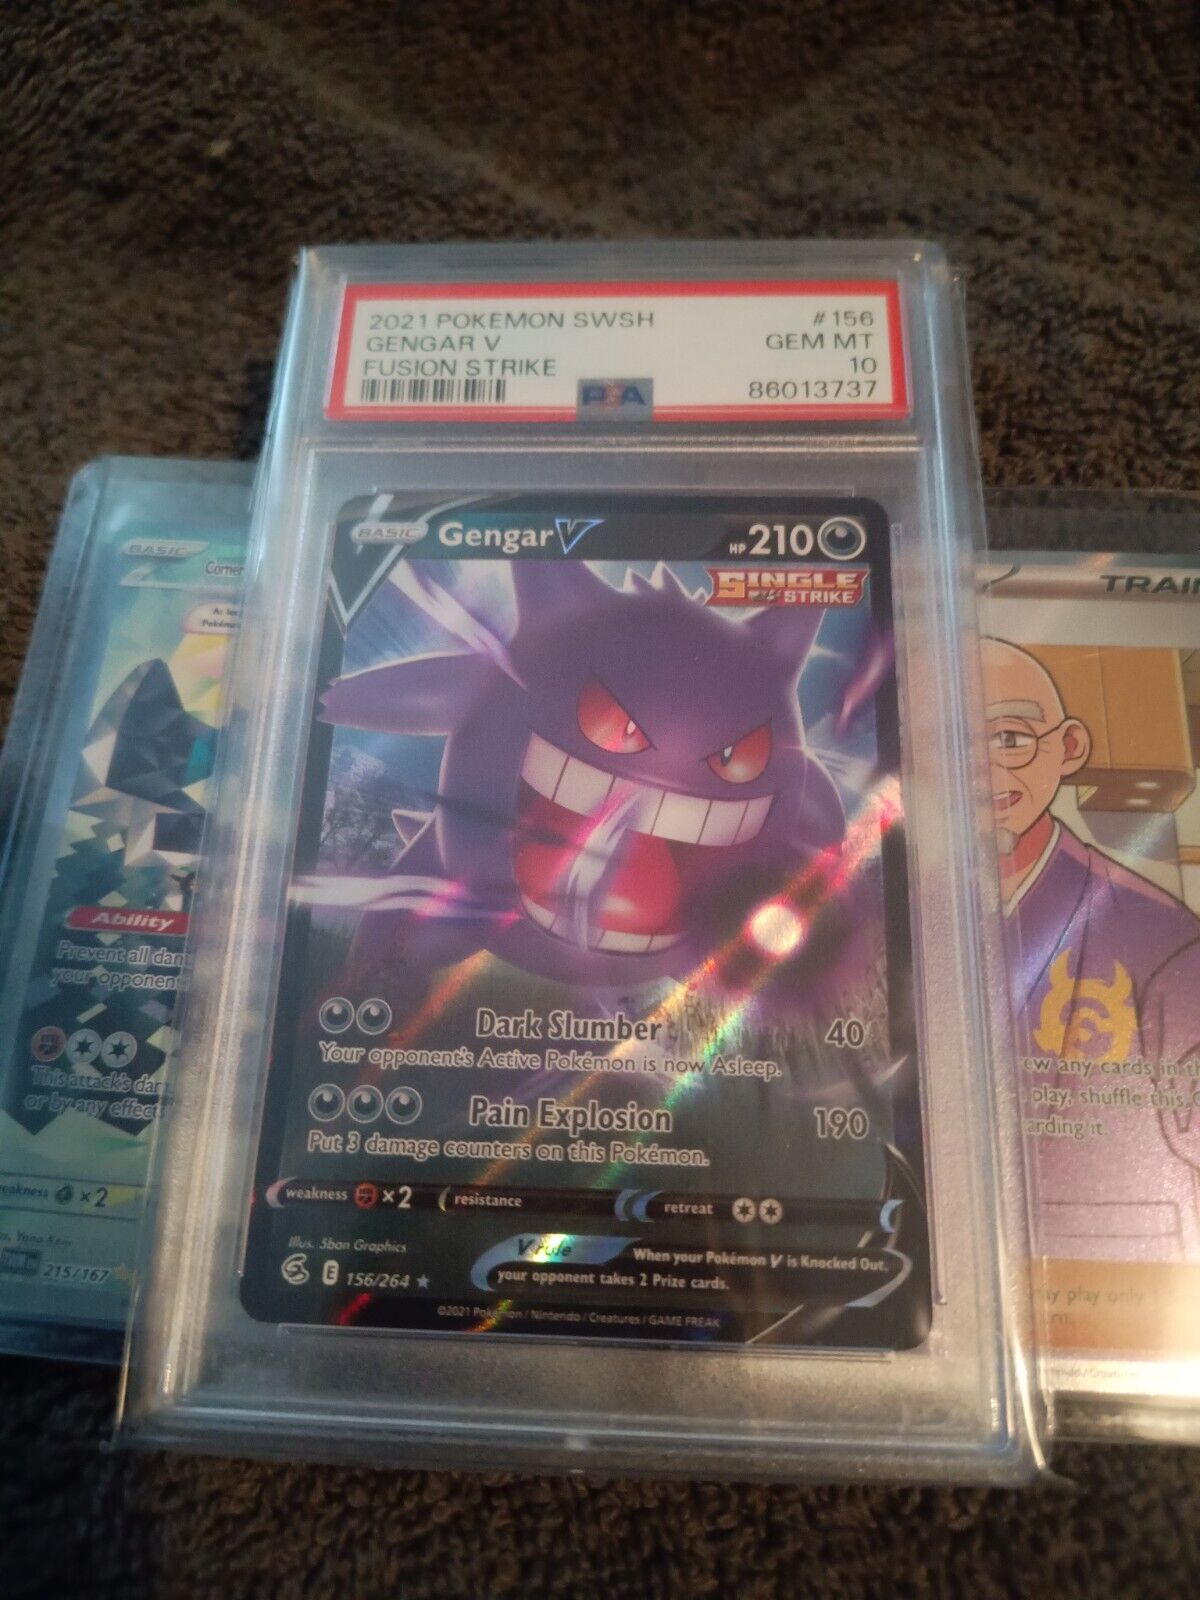 Pokemon Card PSA 10 Gengar V Fusion Strike Ultra Rare Holo Foil 156/264 2021 B4